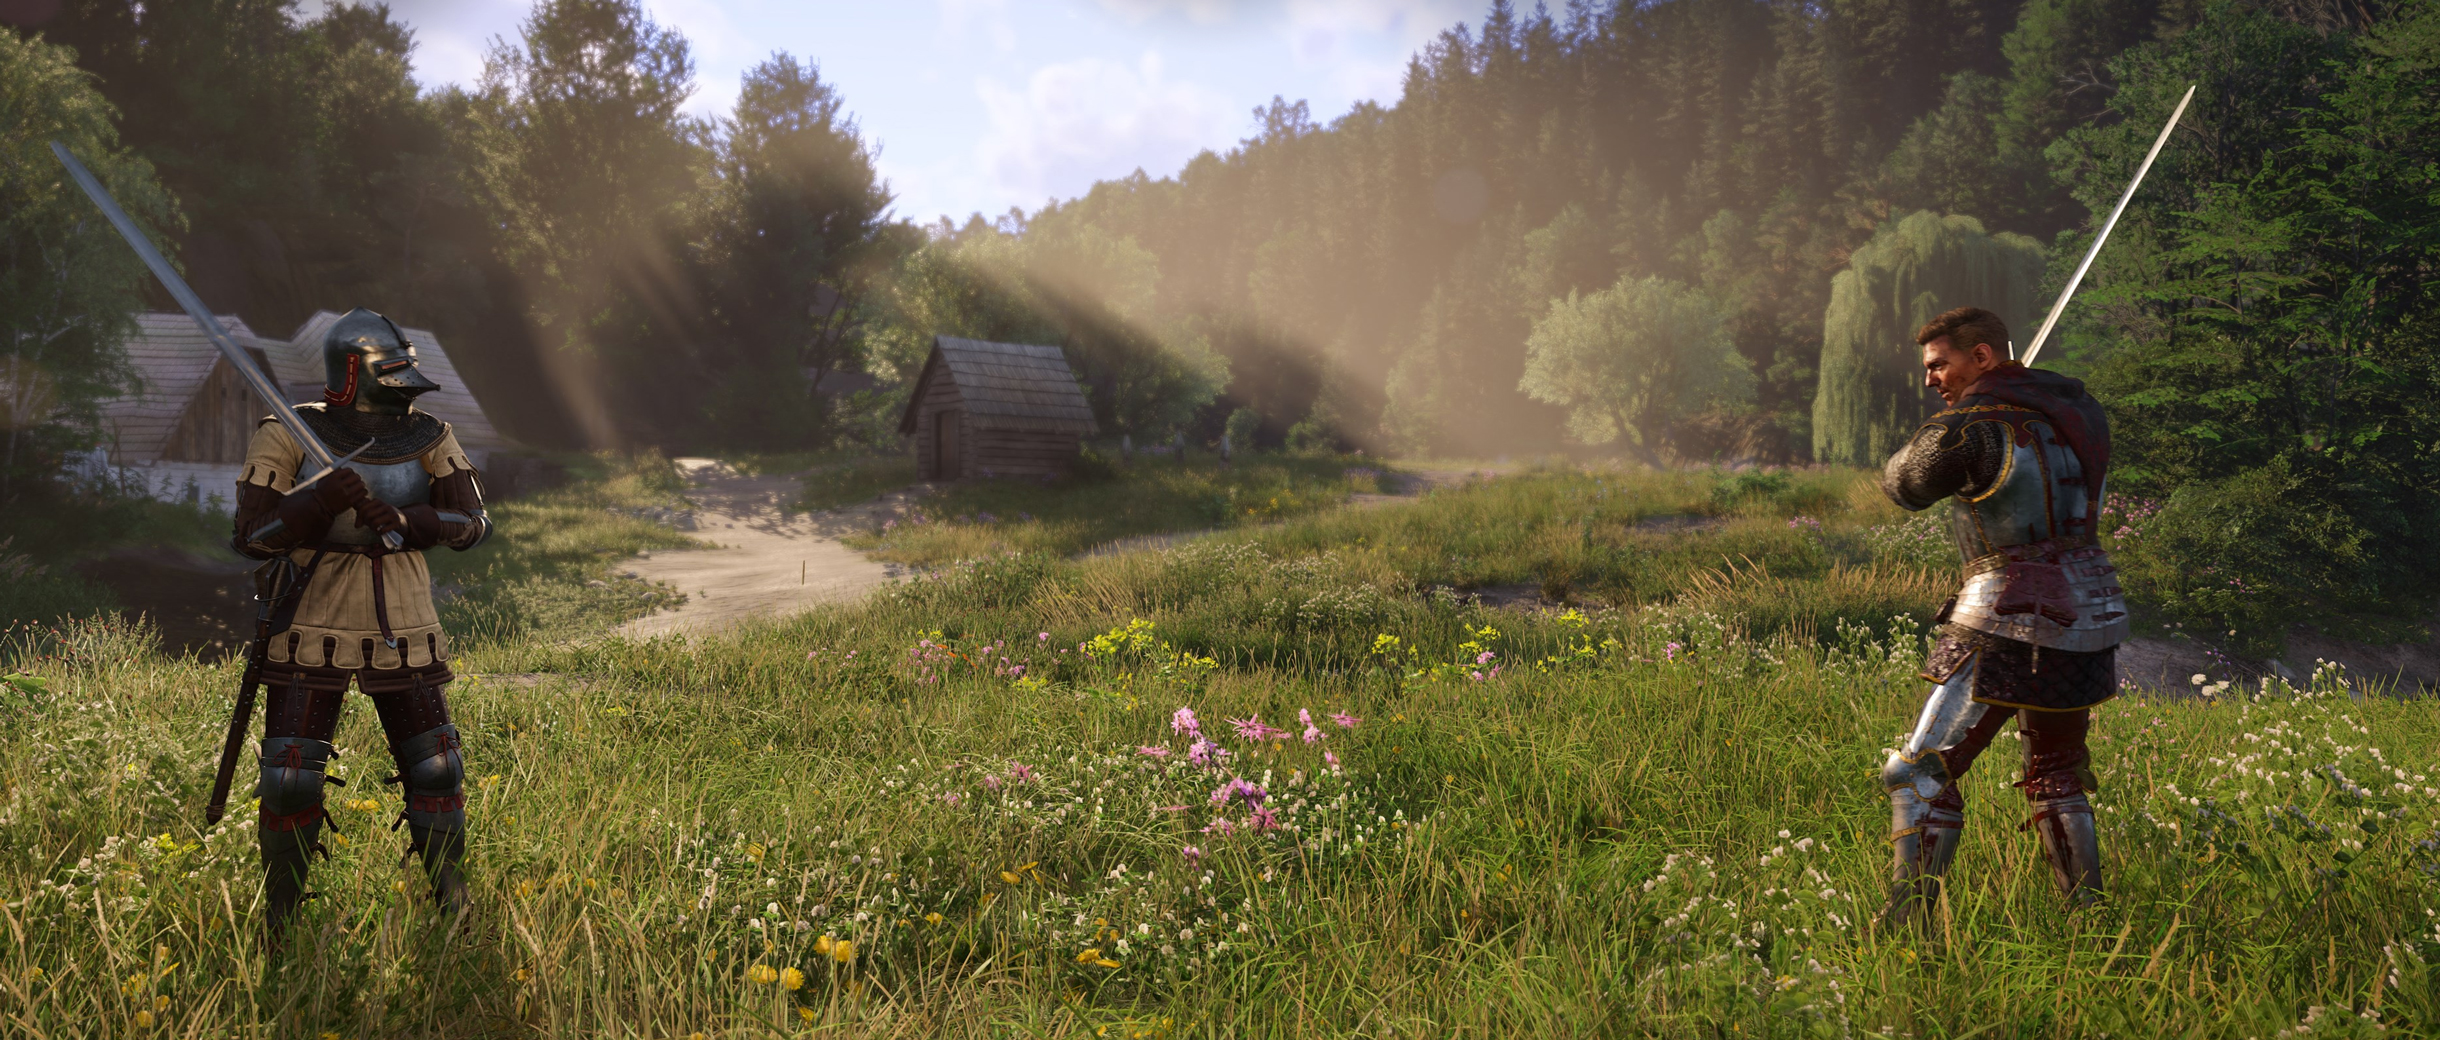 Игру вновь разрабатывают на движке CryEngine